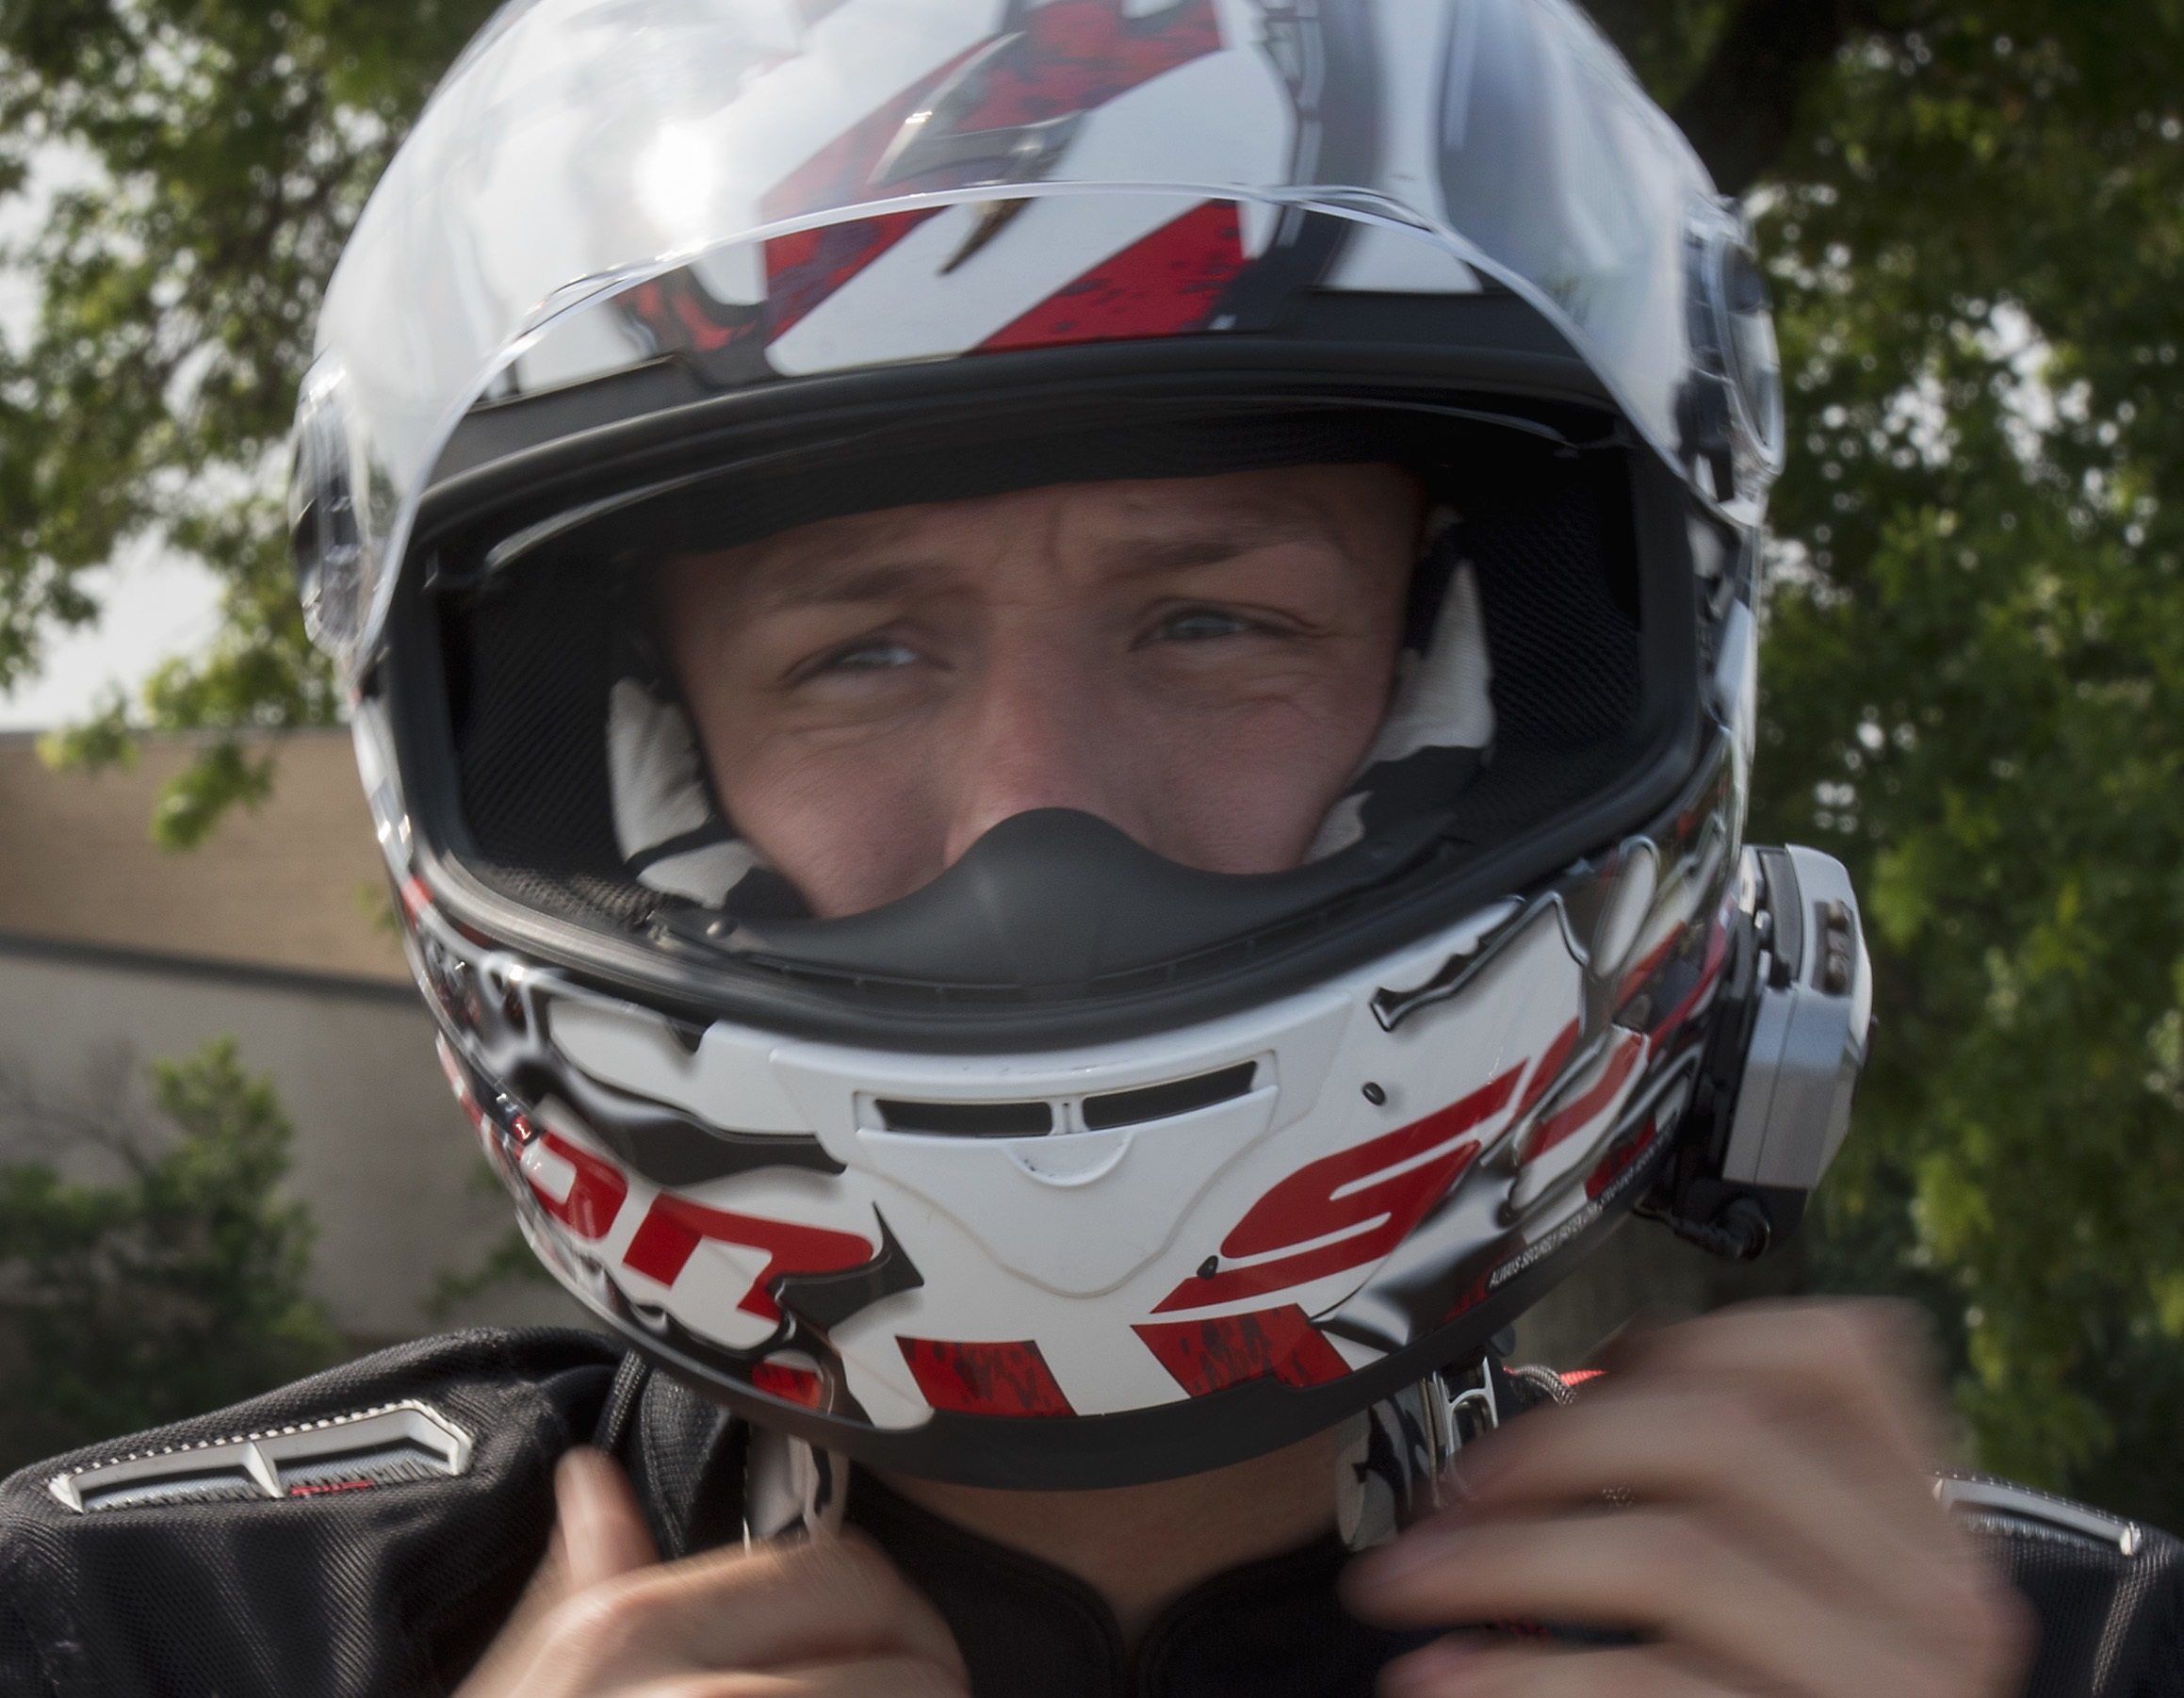 Motorcycle Rider in helmet